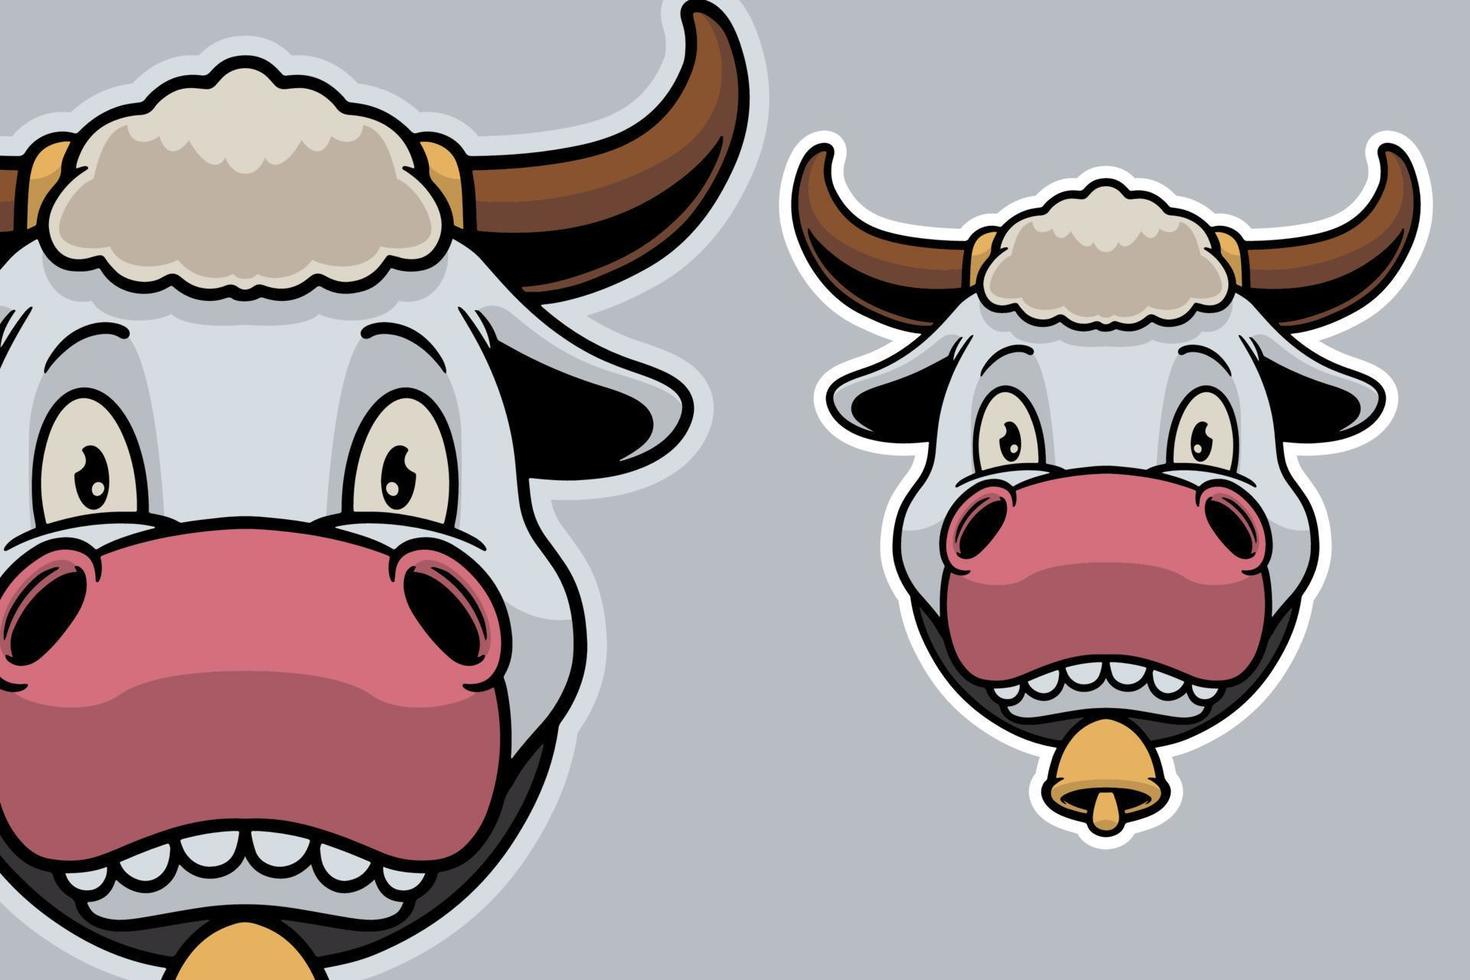 tête de vache mascotte vector illustration cartoon style